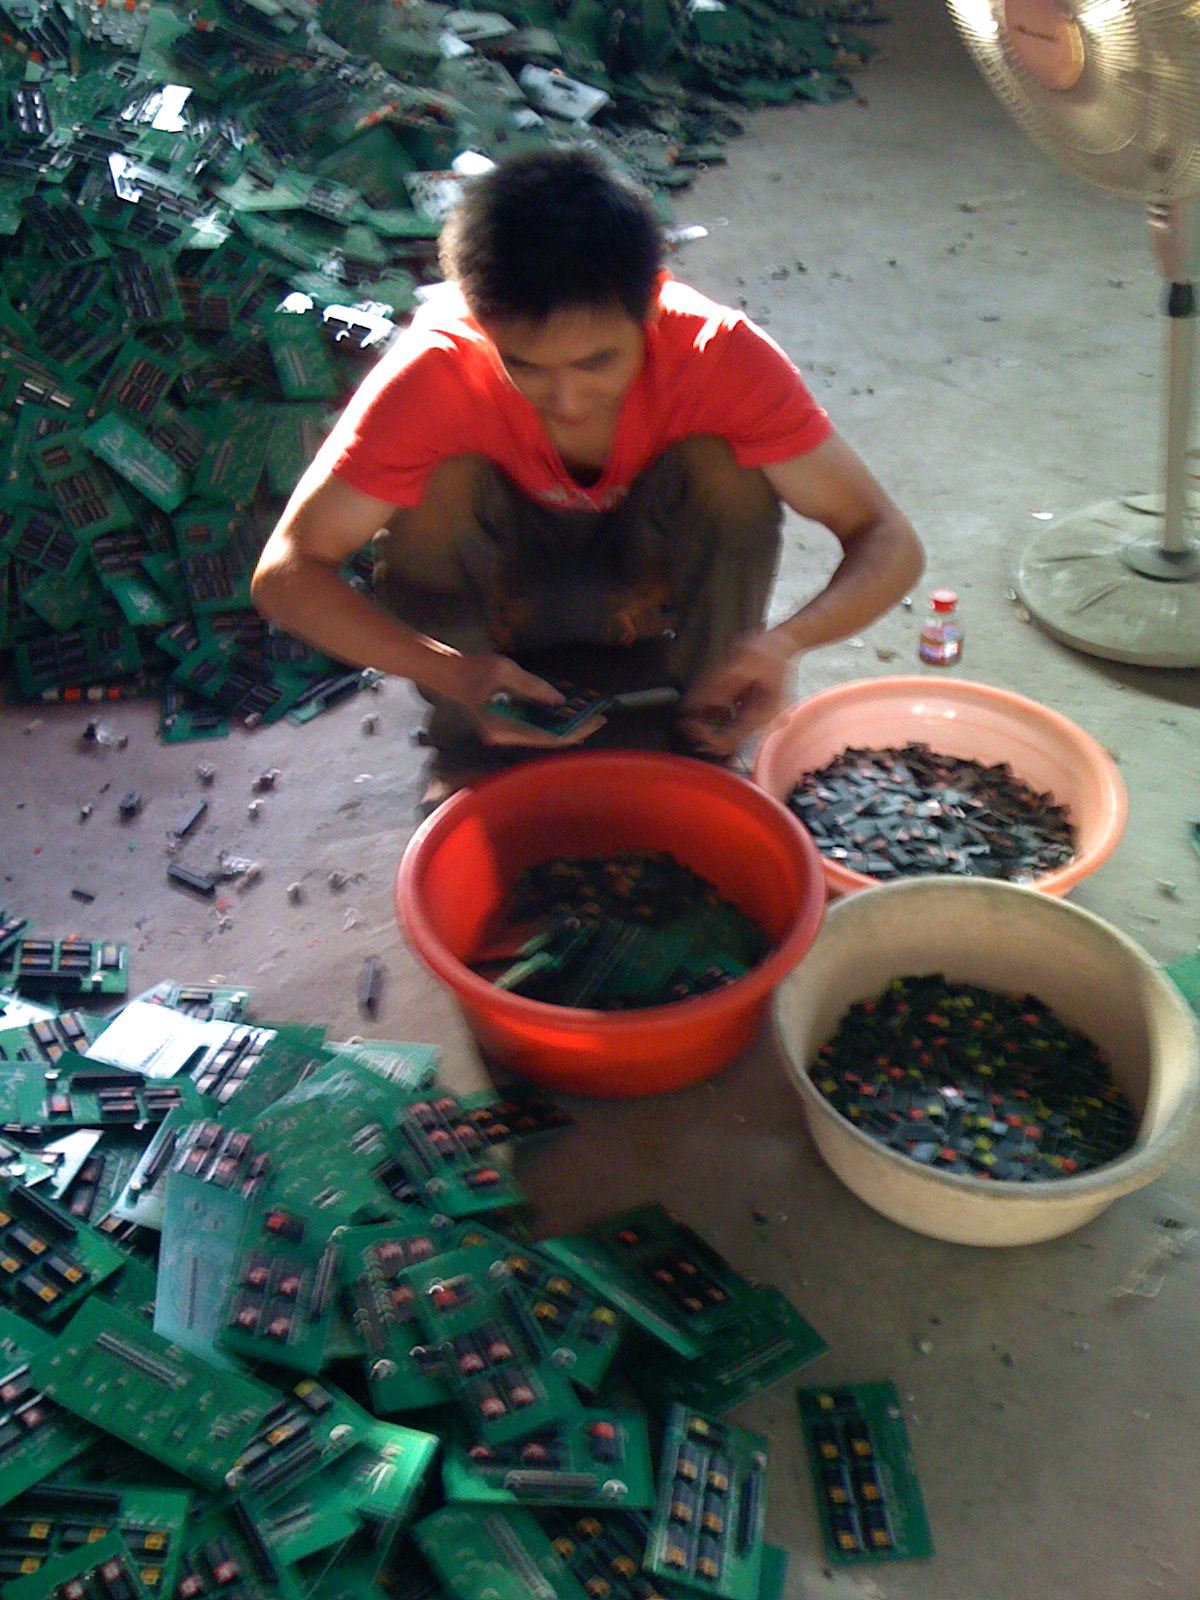 E-waste recycling process.